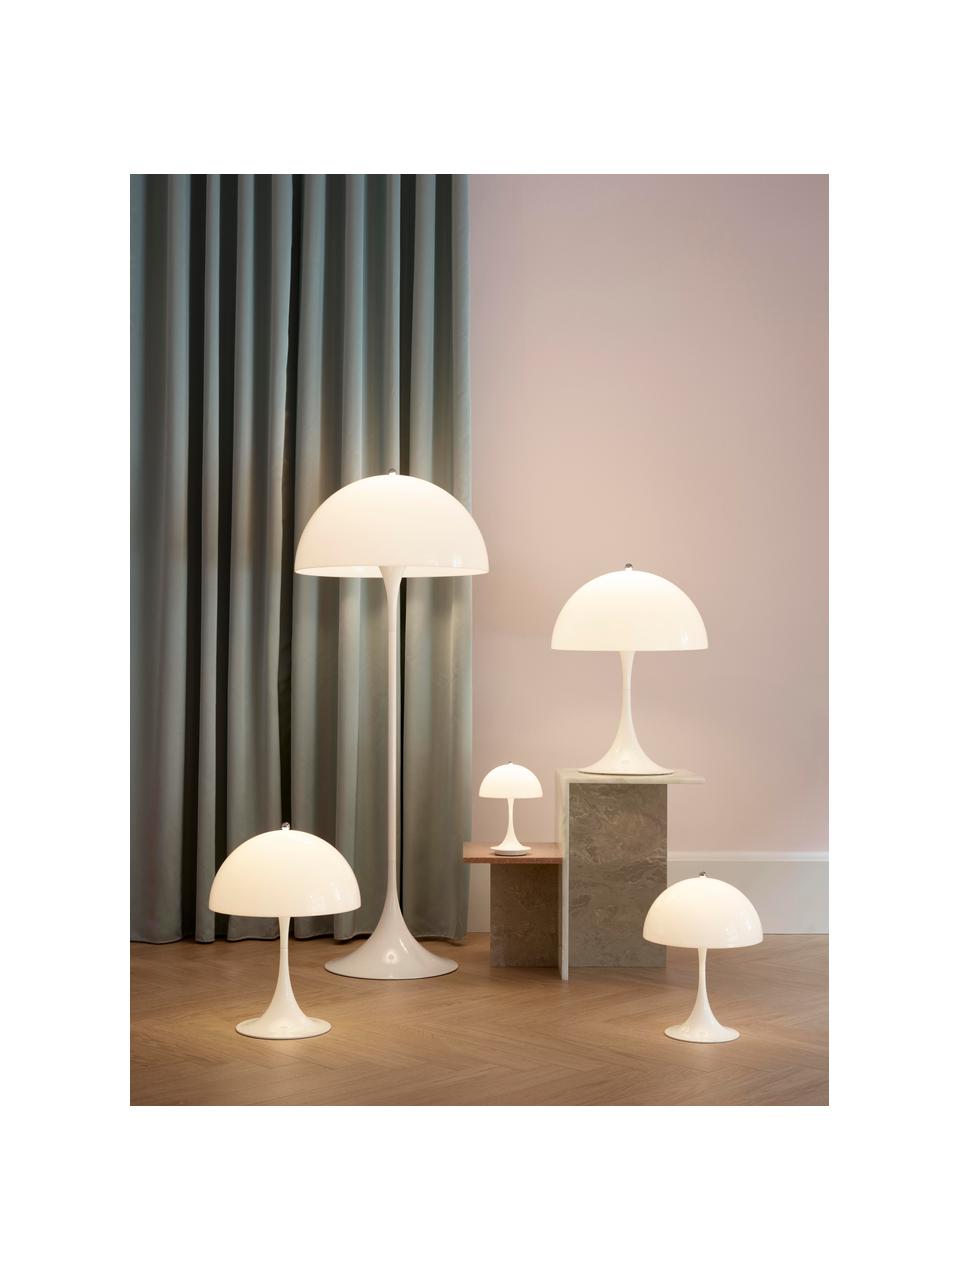 Kleine Stehlampe Panthella, Lampenschirm: Acrylglas, Weiß, H 129 cm